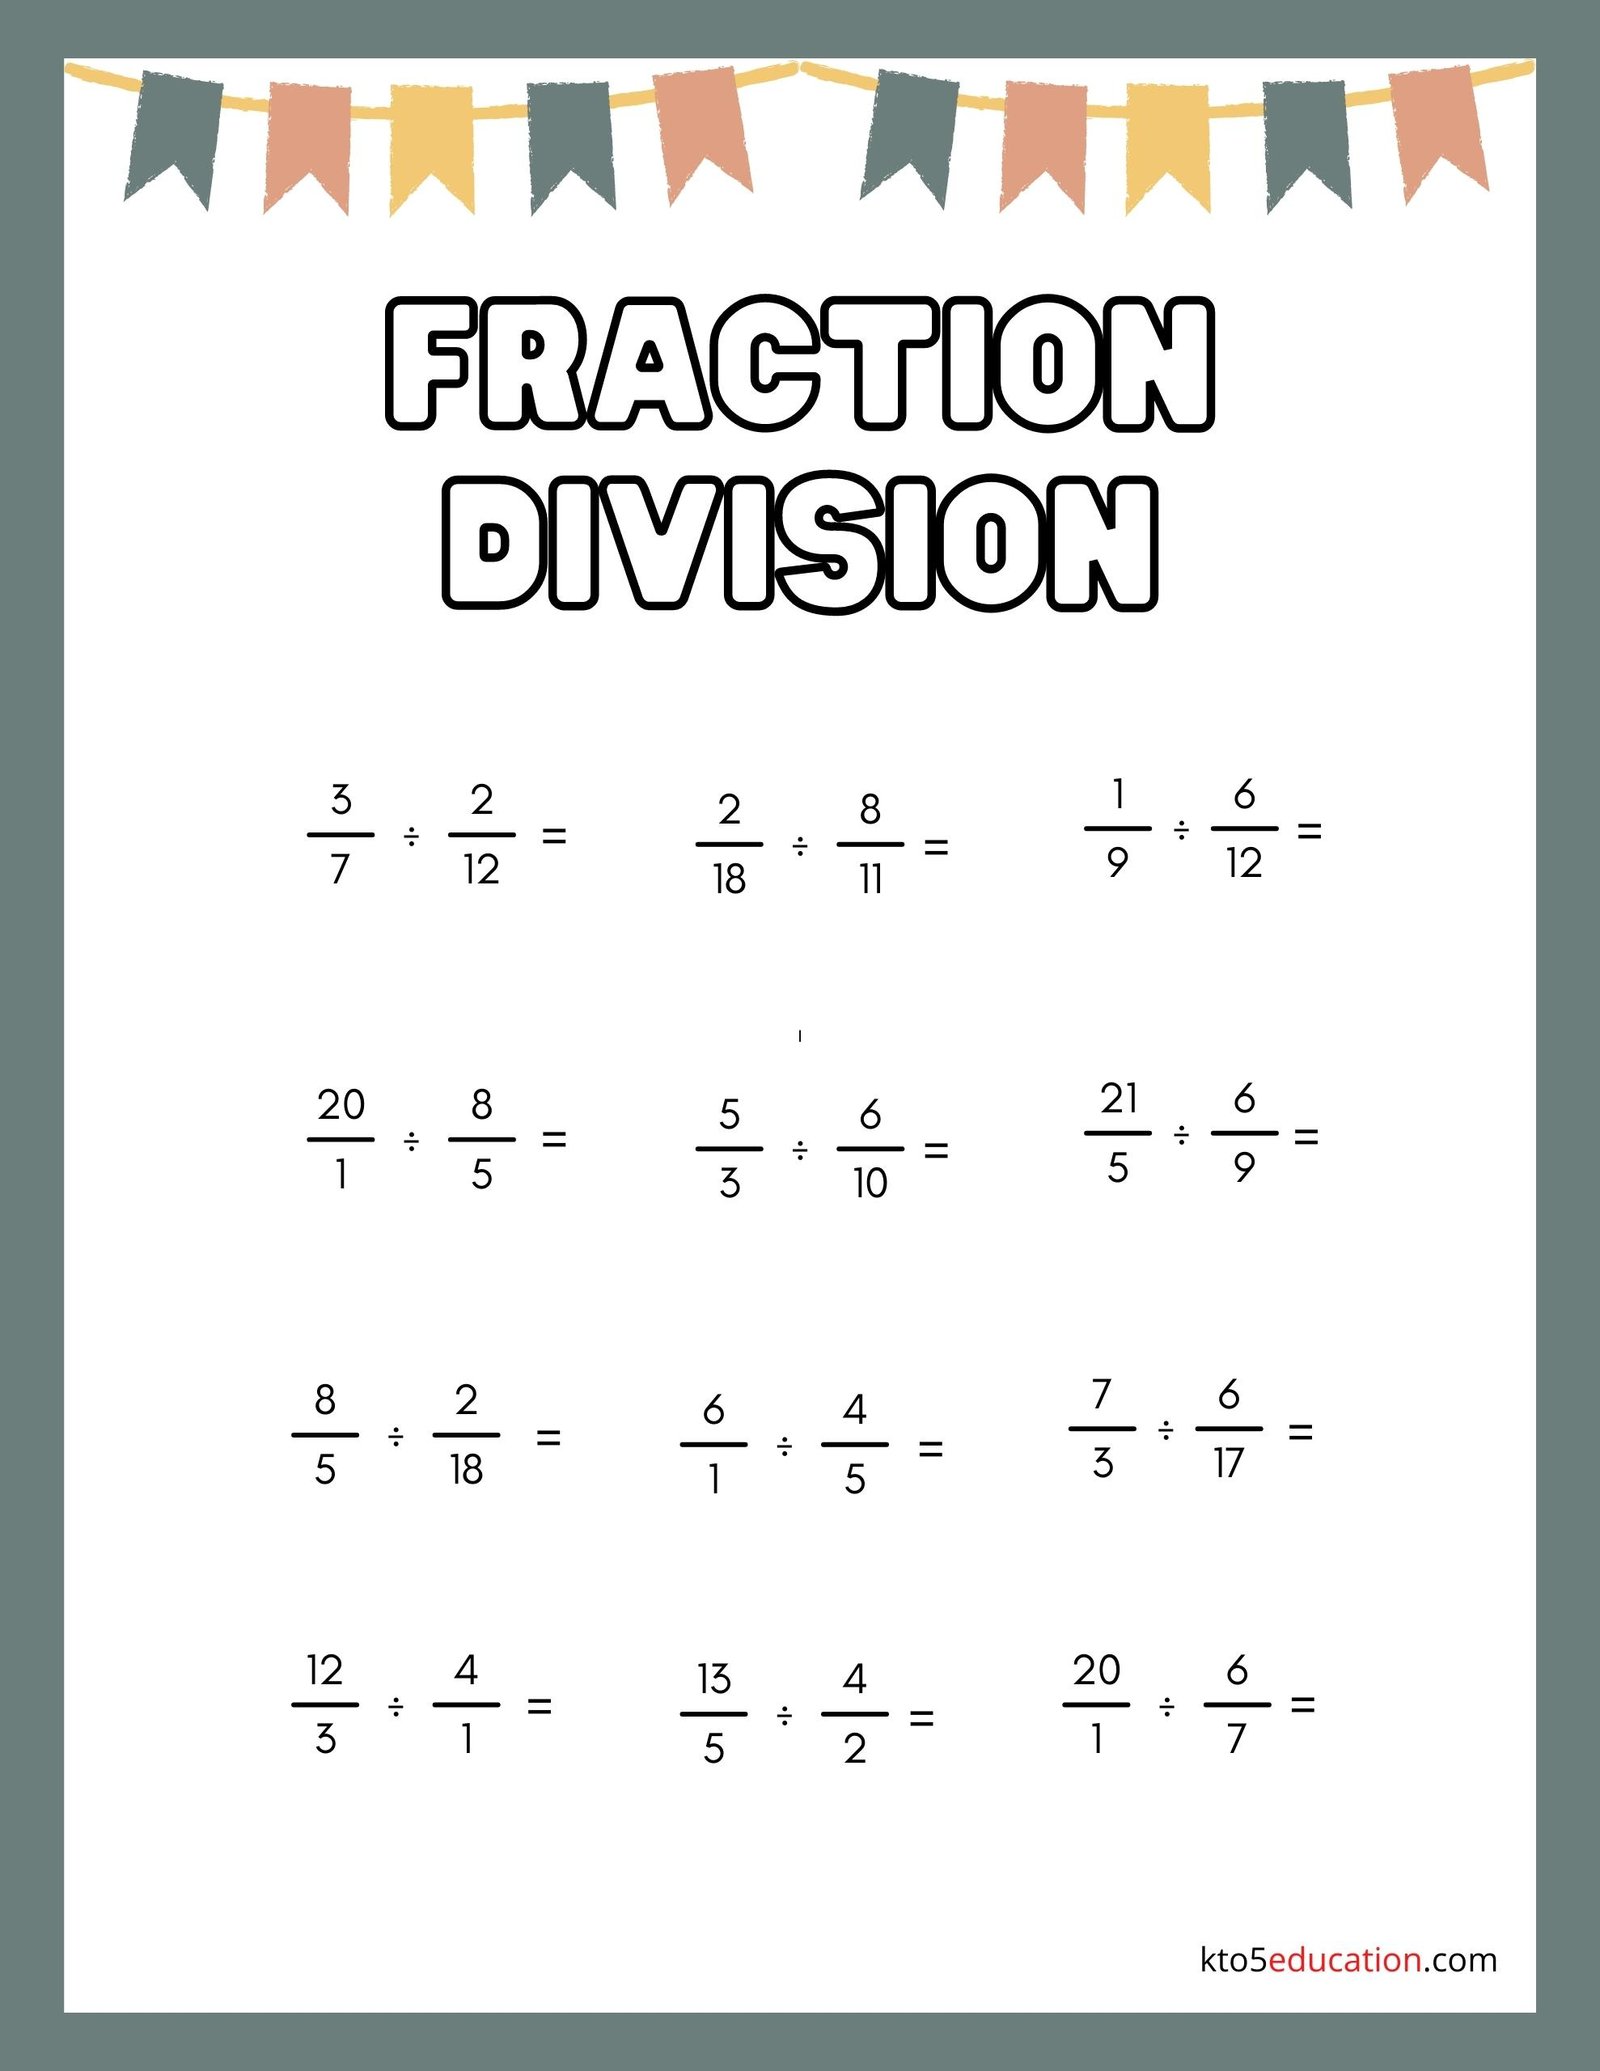 Fraction Division Worksheets Free